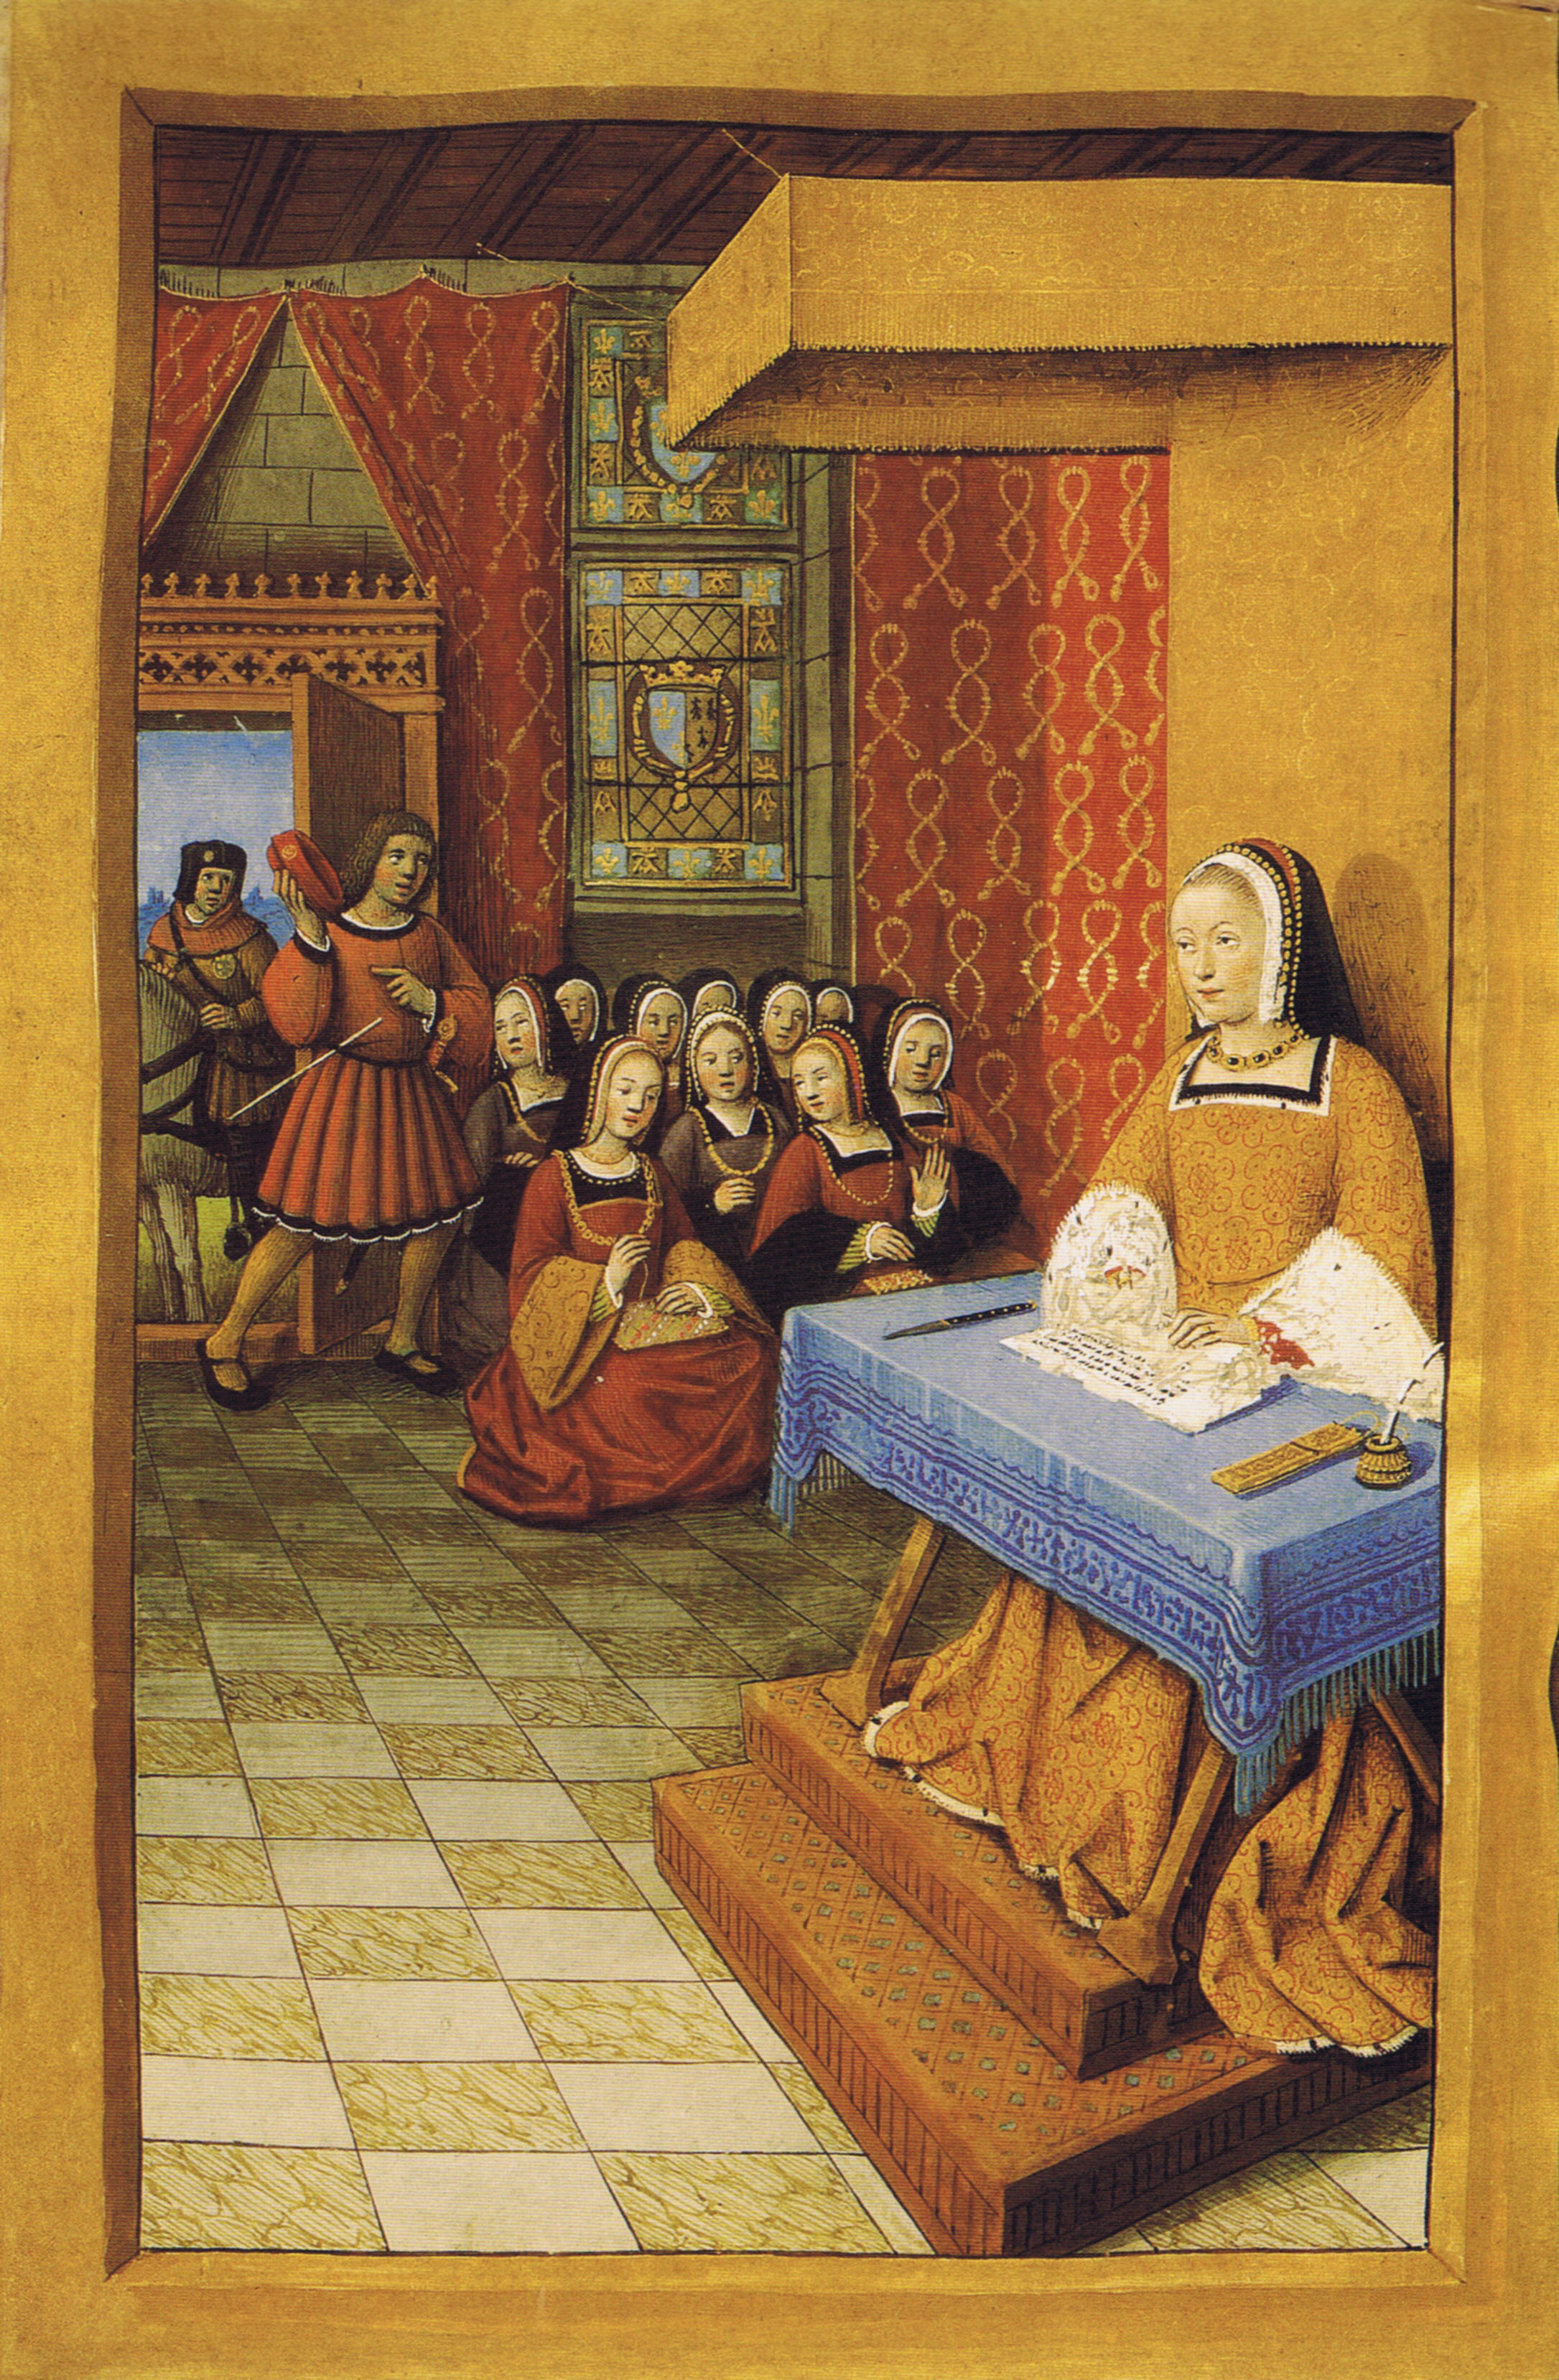 1504 (approx) - "Epistres Envoyées au Roi"